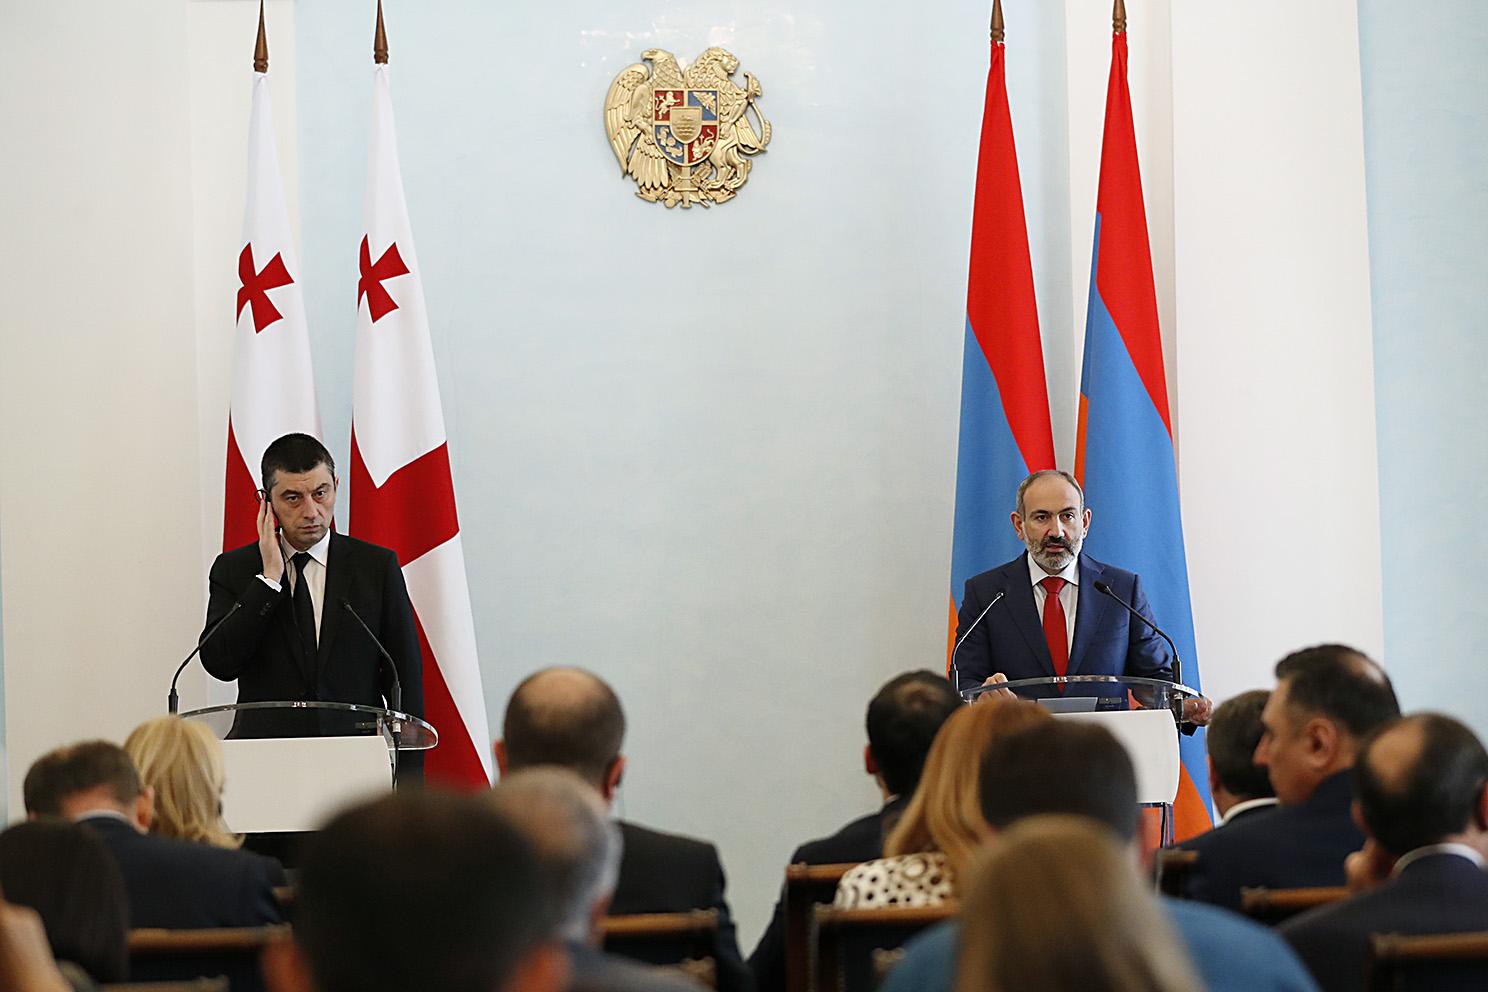 Пашинян: Развитие отношений Армении и Грузии должно протекать без внешнего воздействия